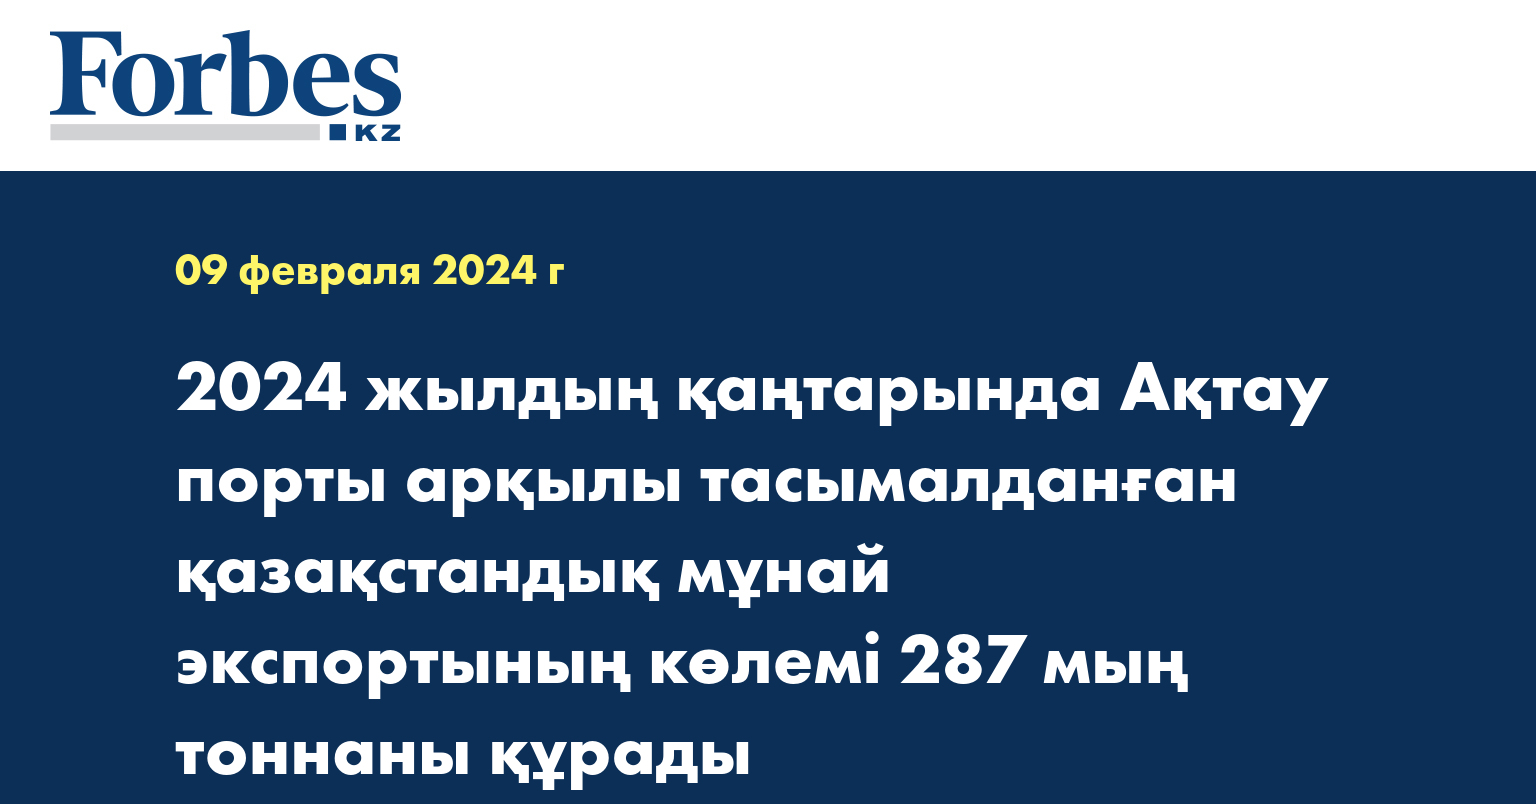 2024 жылдың қаңтарында Ақтау порты арқылы тасымалданған қазақстандық мұнай экспортының көлемі  287 мың тоннаны құрады